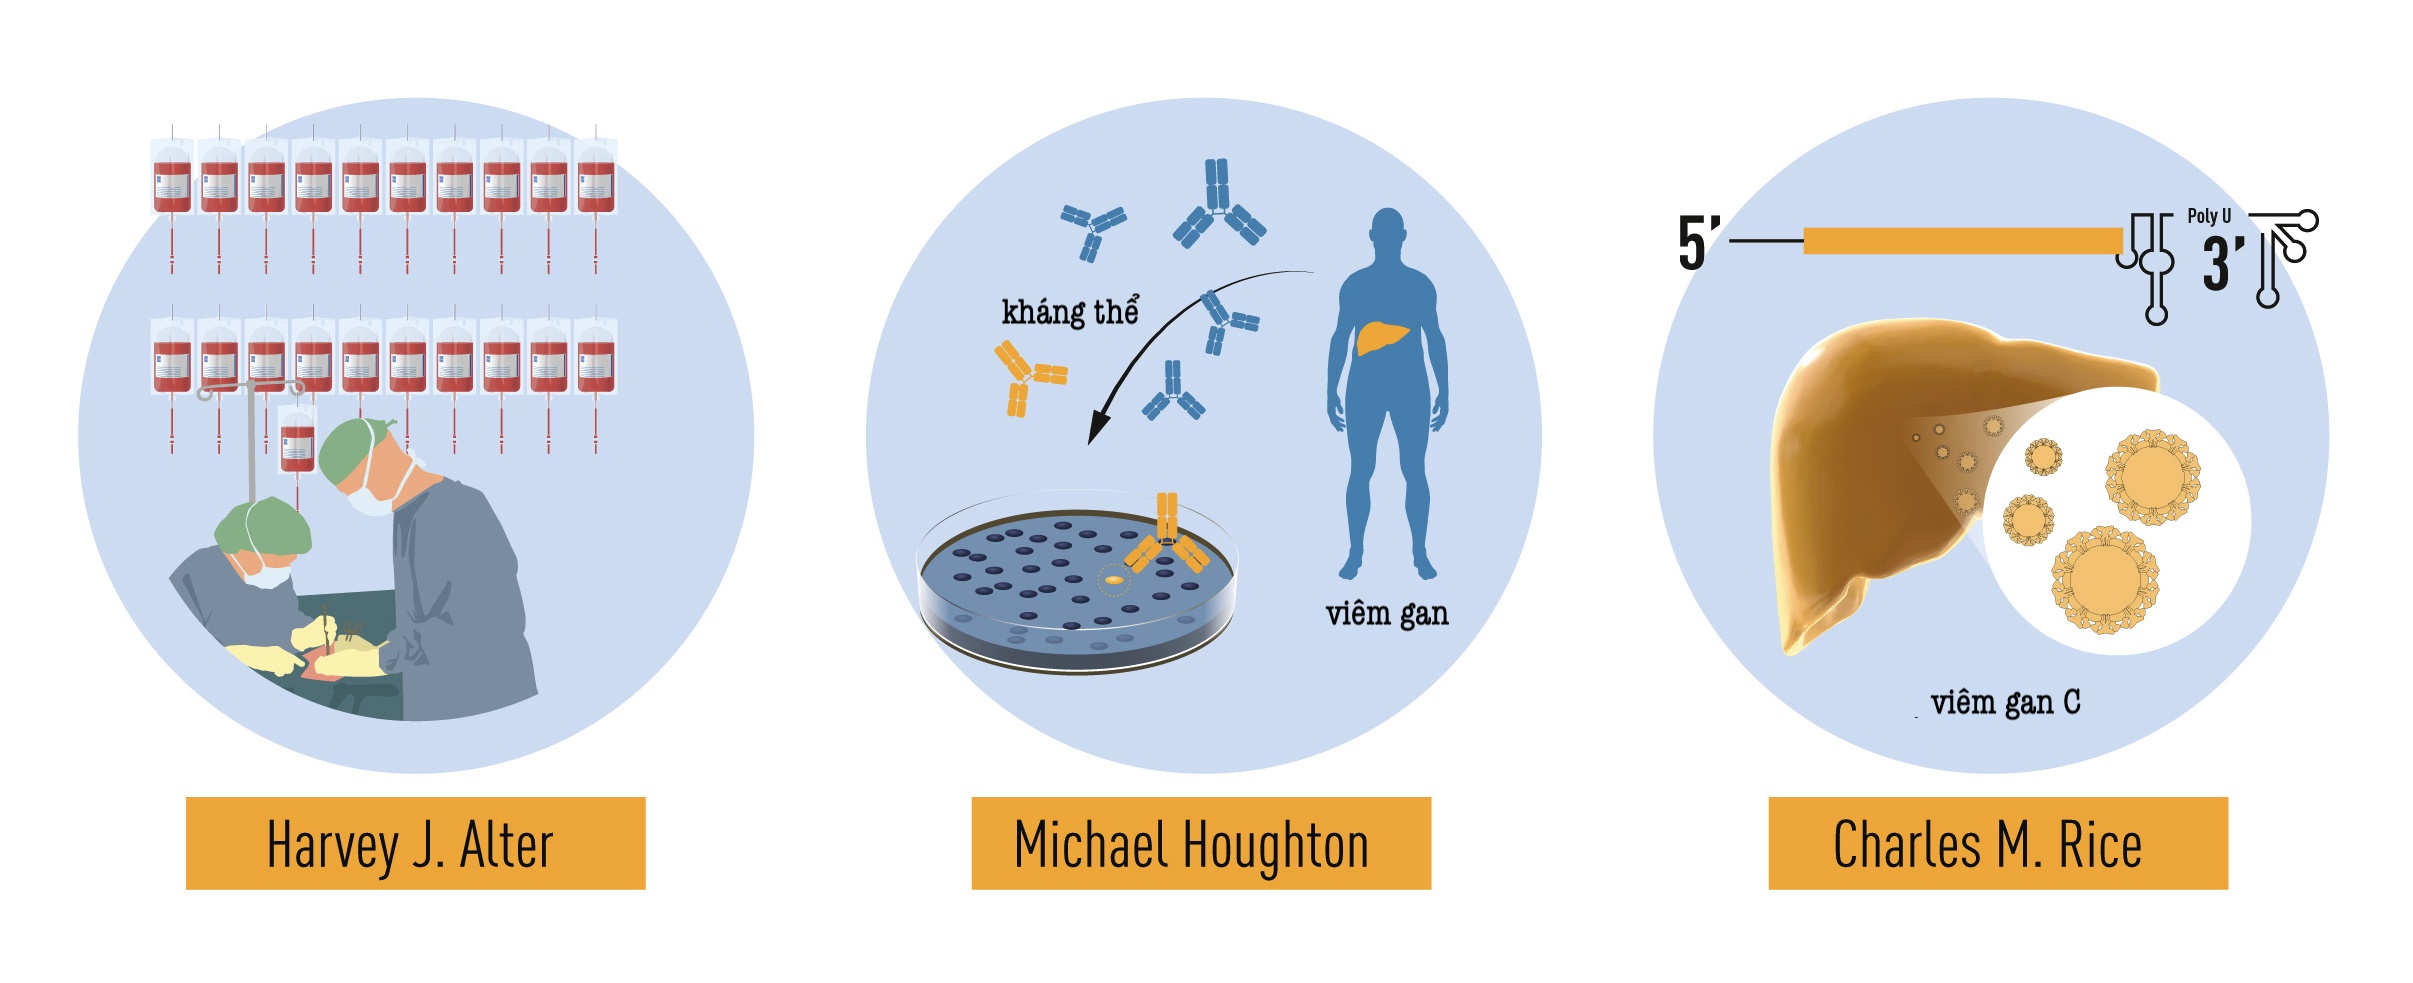 Đóng góp của 3 nhà khoa học vào giải Nobel Y học năm nay: Các nghiên cứu có phương pháp về bệnh viêm gan liên quan đến truyền máu của Harvey J. Alter đã chứng minh rằng một virus chưa được biết đến là nguyên nhân phổ biến của bệnh viêm gan mạn. Michael Houghton đã sử dụng một chiến lược mới để phân lập thành công hệ gene của loài virus mới được đặt tên là virus viêm gan C. Charles M. Rice đã cung cấp bằng chứng quyết định cho thấy một mình virus viêm gan C có thể gây ra bệnh viêm gan.